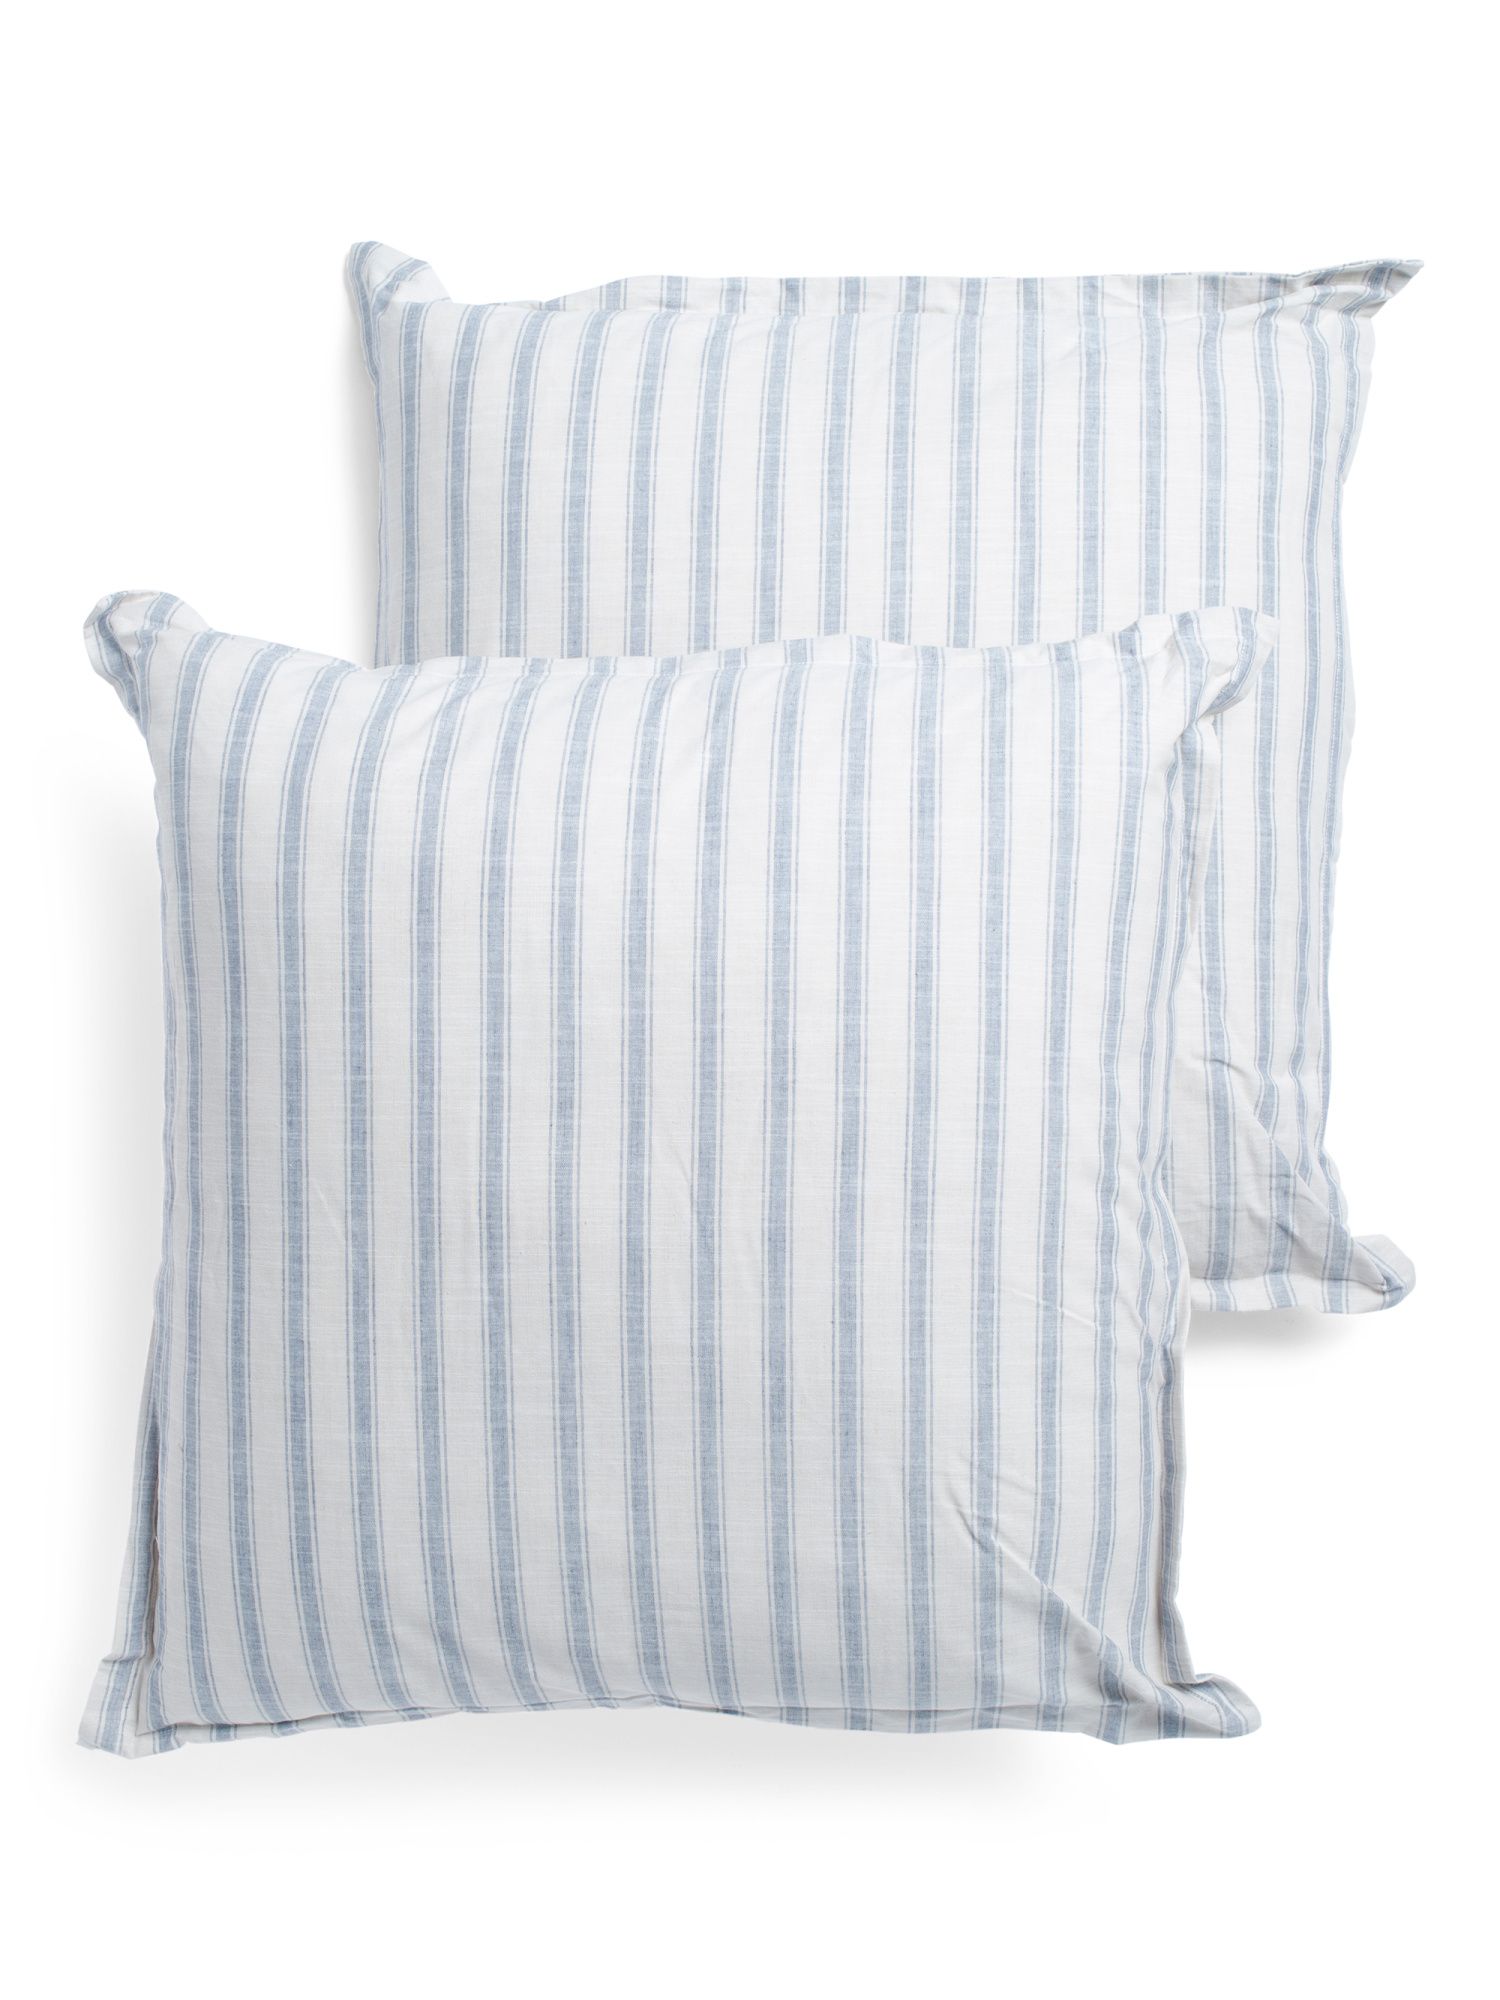 26x26 2pk Bridge Stripe Euro Pillows | TJ Maxx